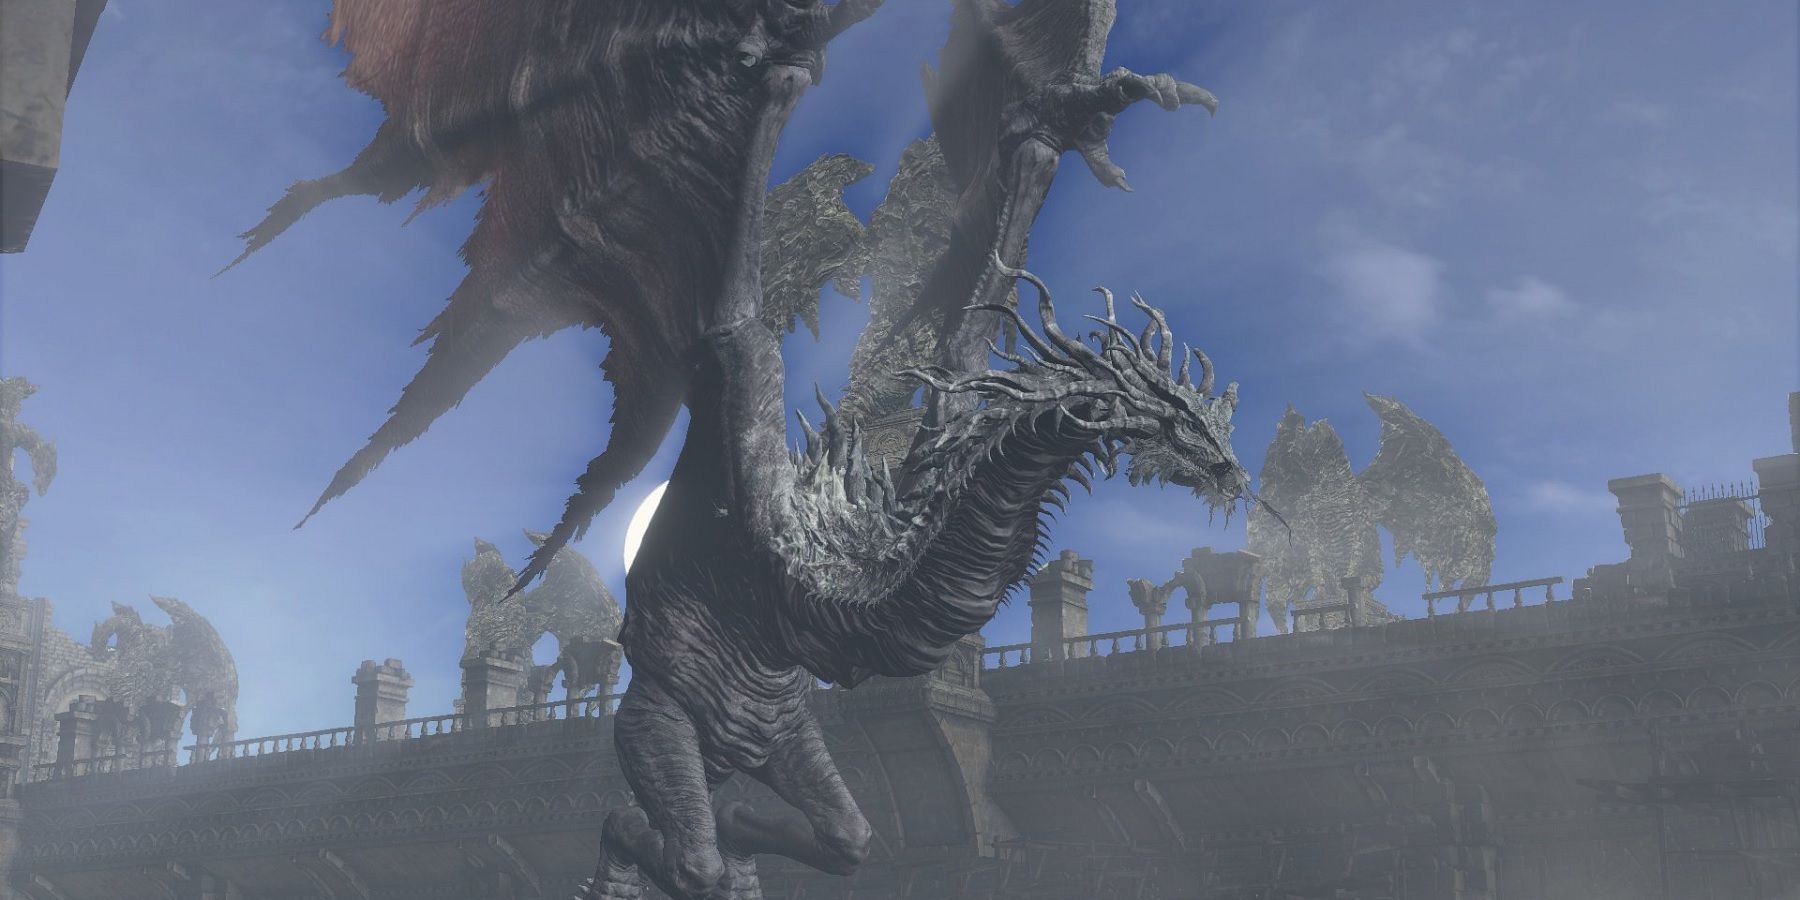 Dark Souls 3’ün antik ejderhası, iniş yapmayan ilginç bir karşılaşmaydı